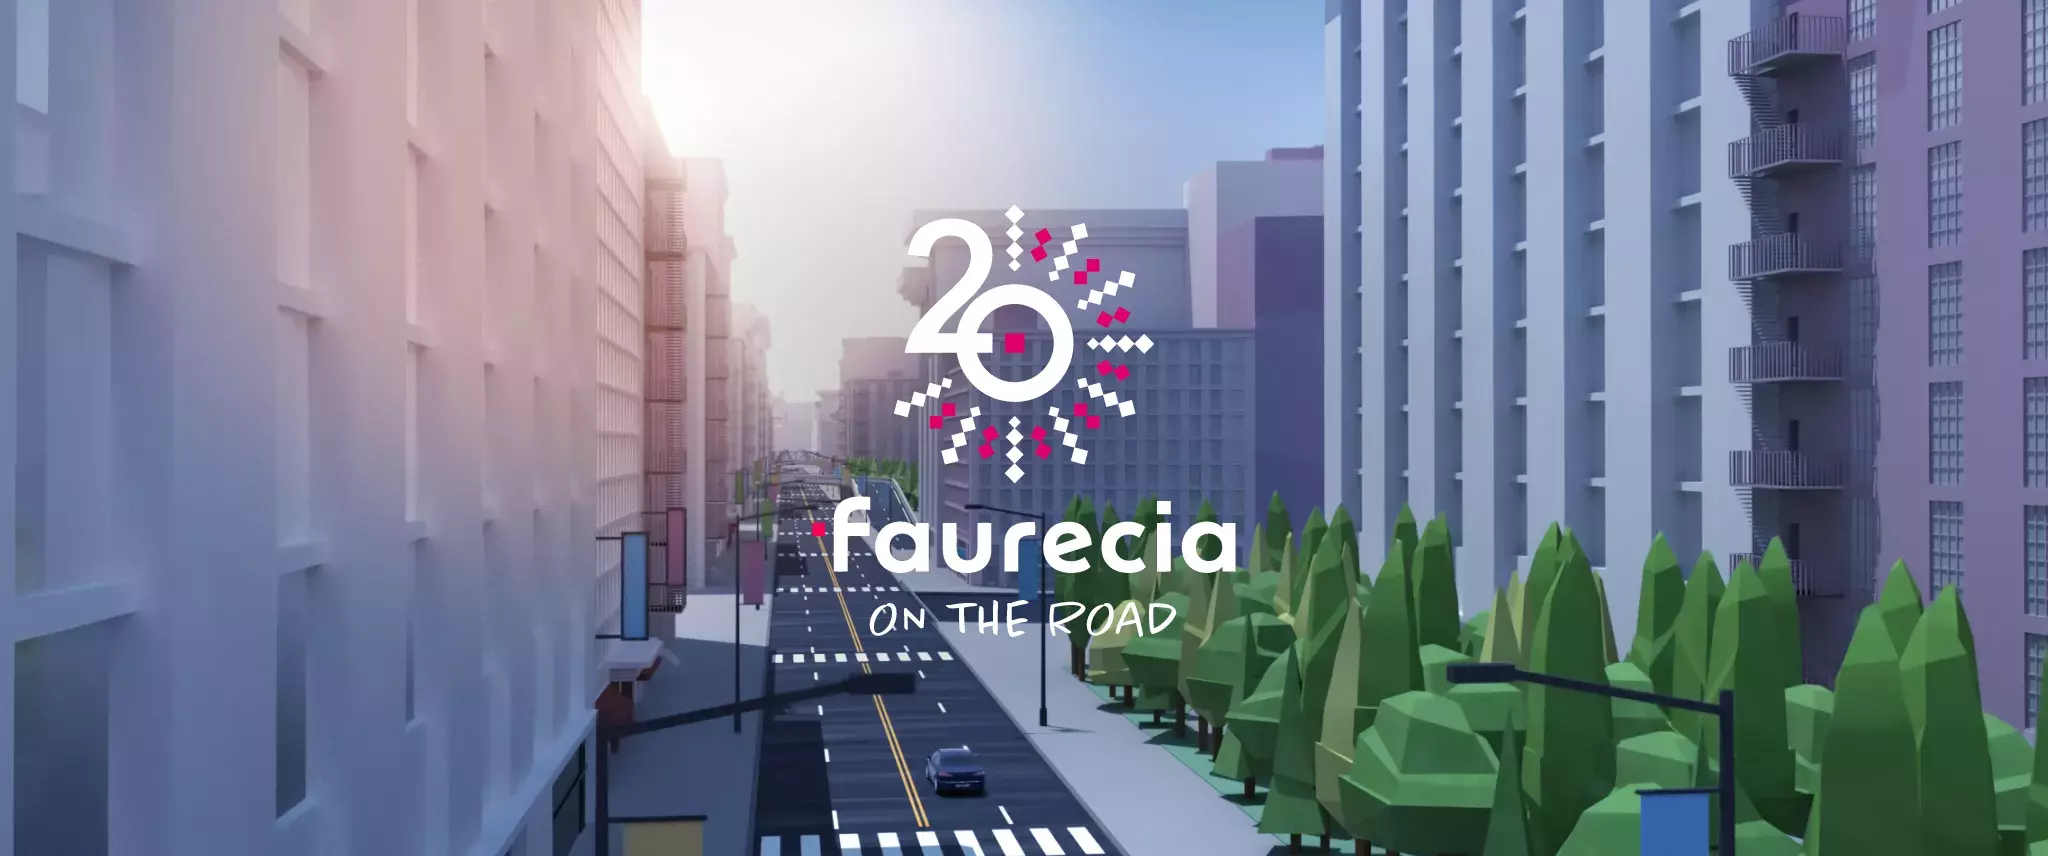 Faurecia 20 years